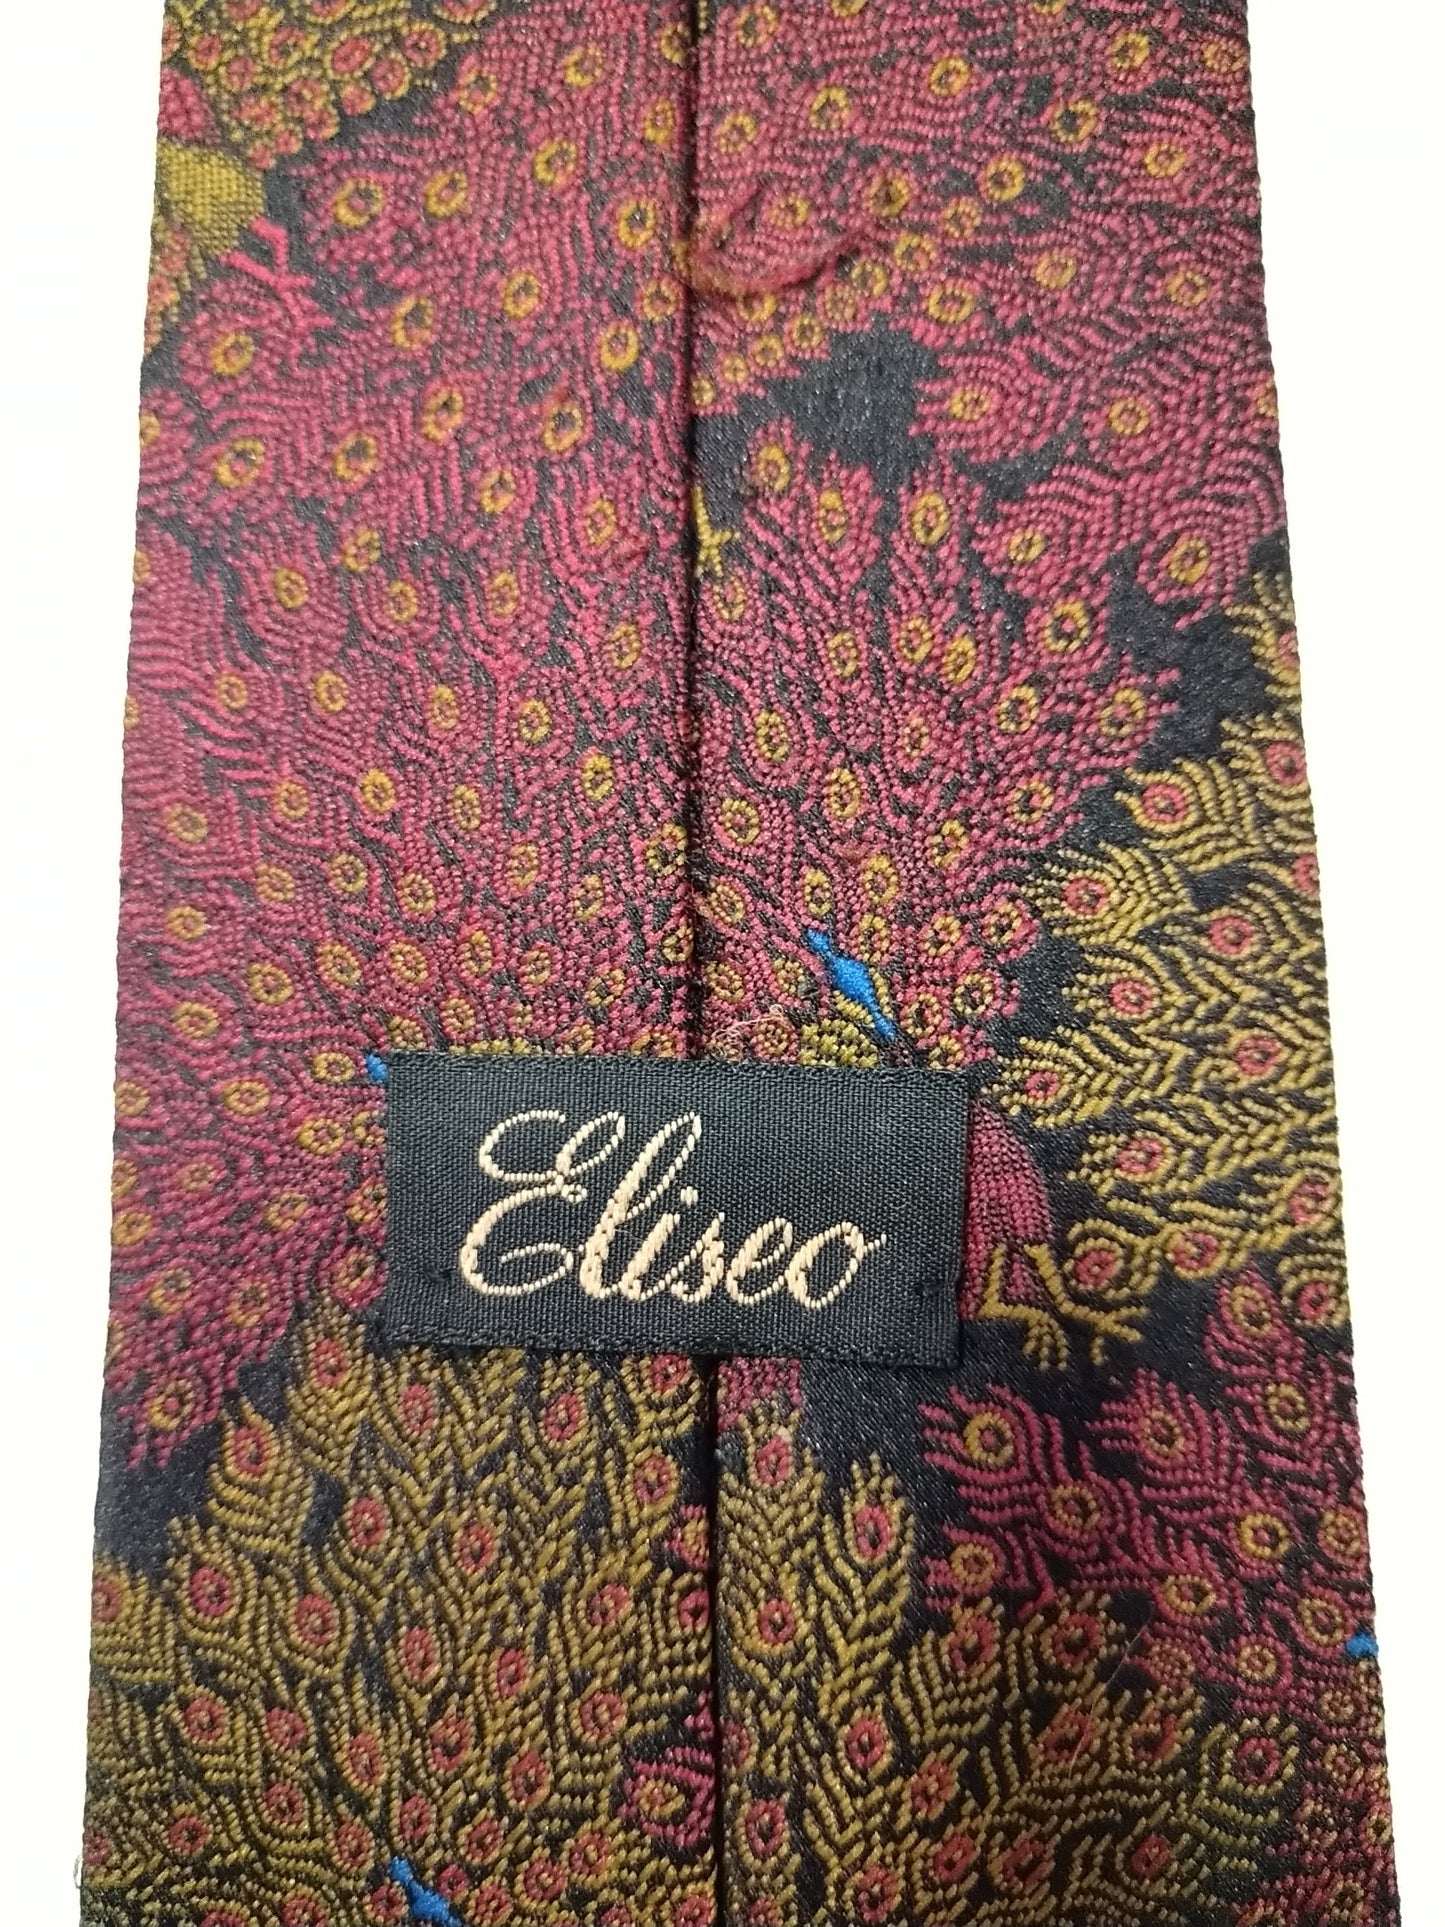 La corbata vintage de Eliseo. Motivo amarillo rojo.